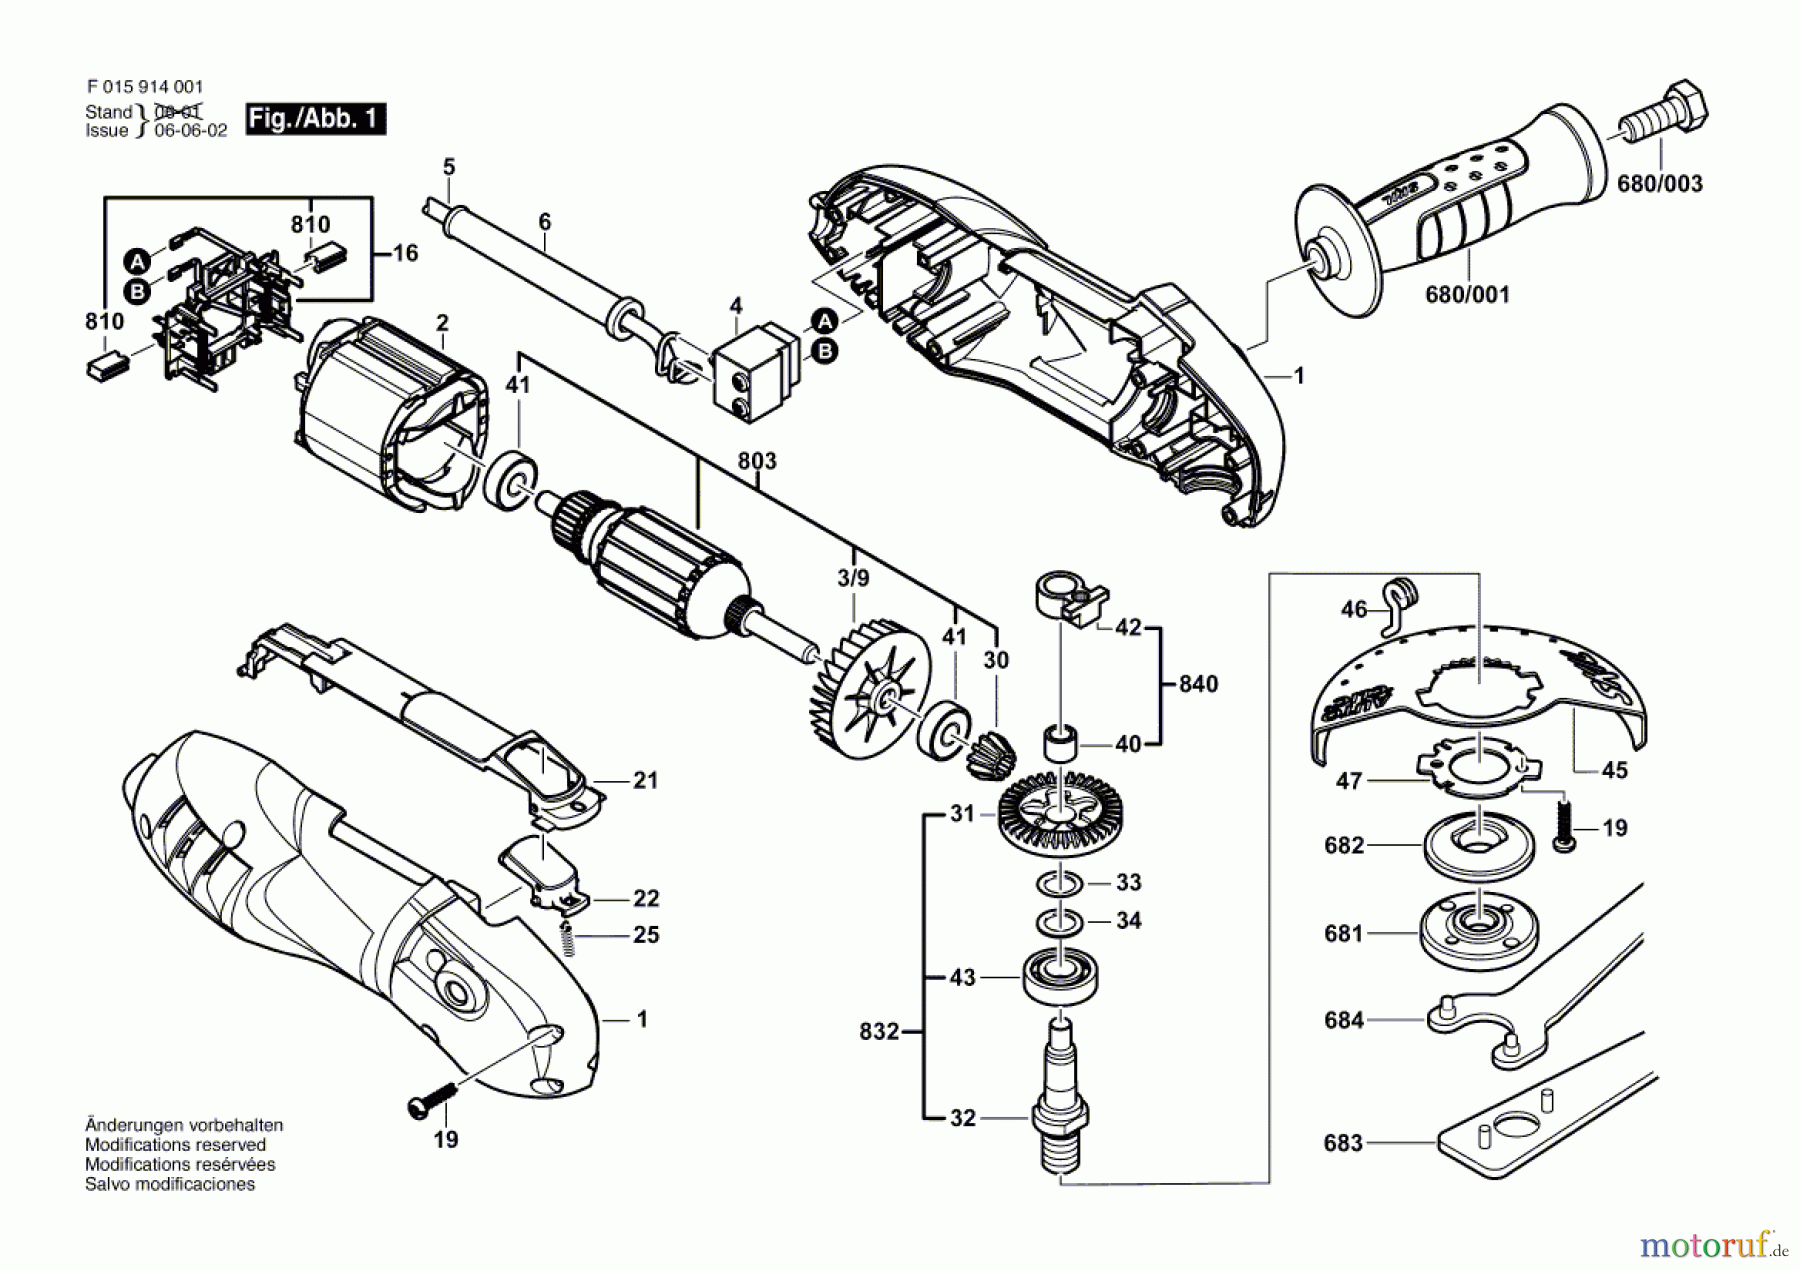  Bosch Werkzeug Winkelschleifer 9140 Seite 1